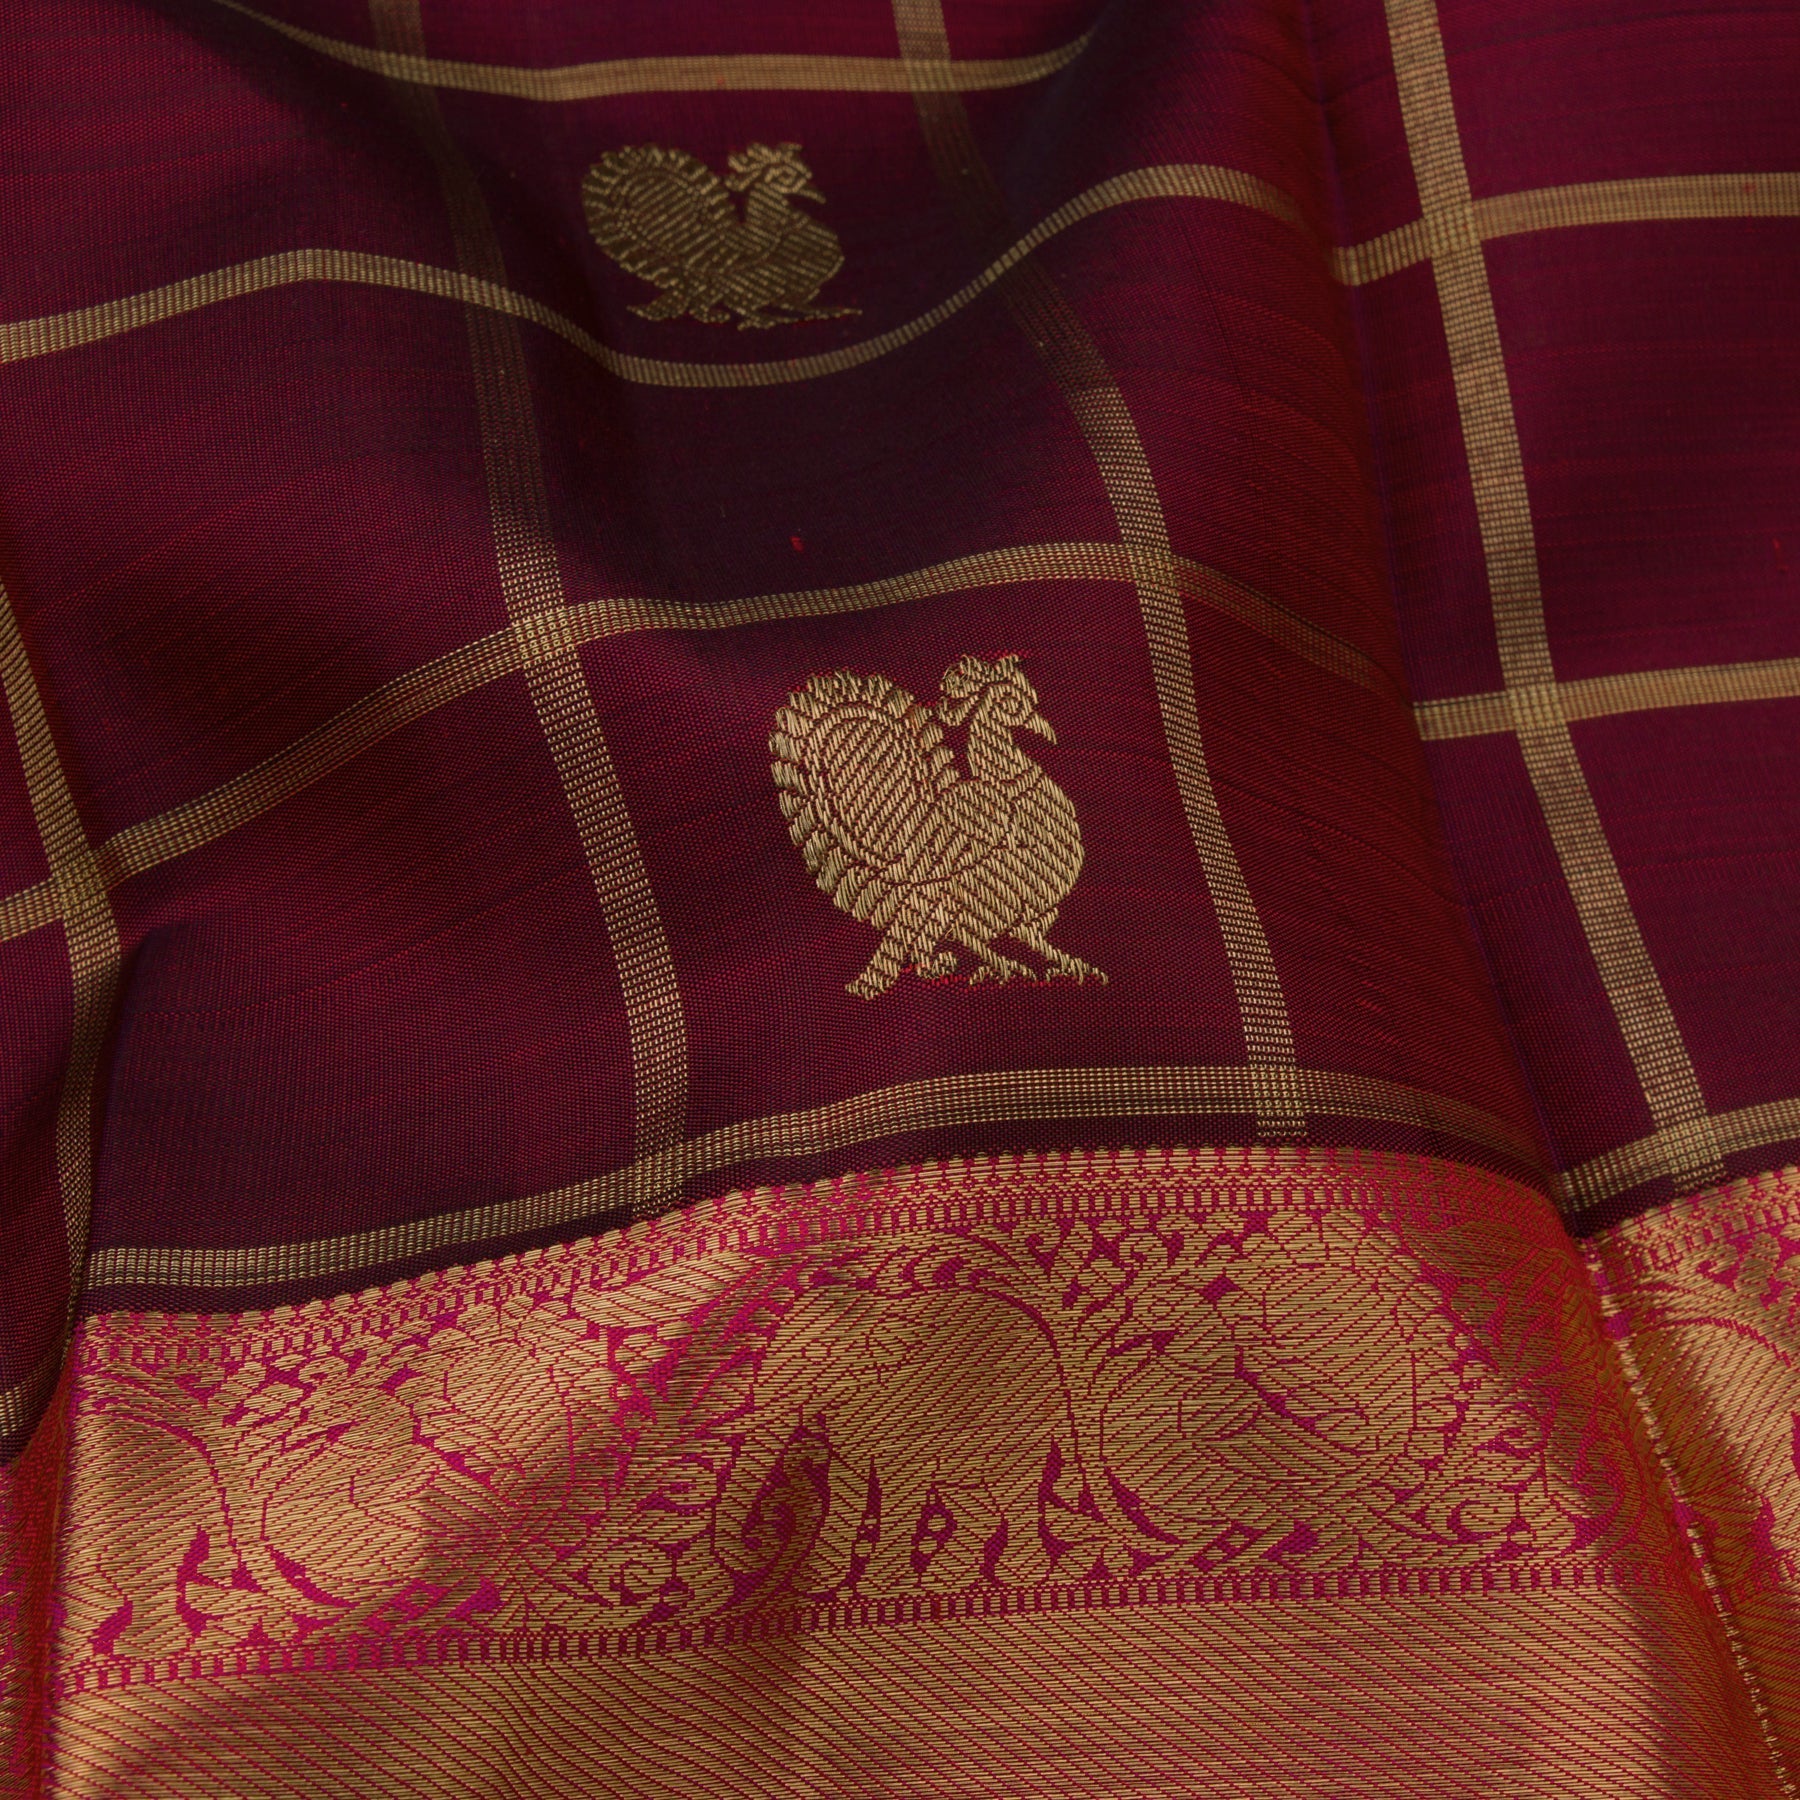 Kanakavalli Kanjivaram Silk Sari 22-110-HS001-07605 - Fabric View